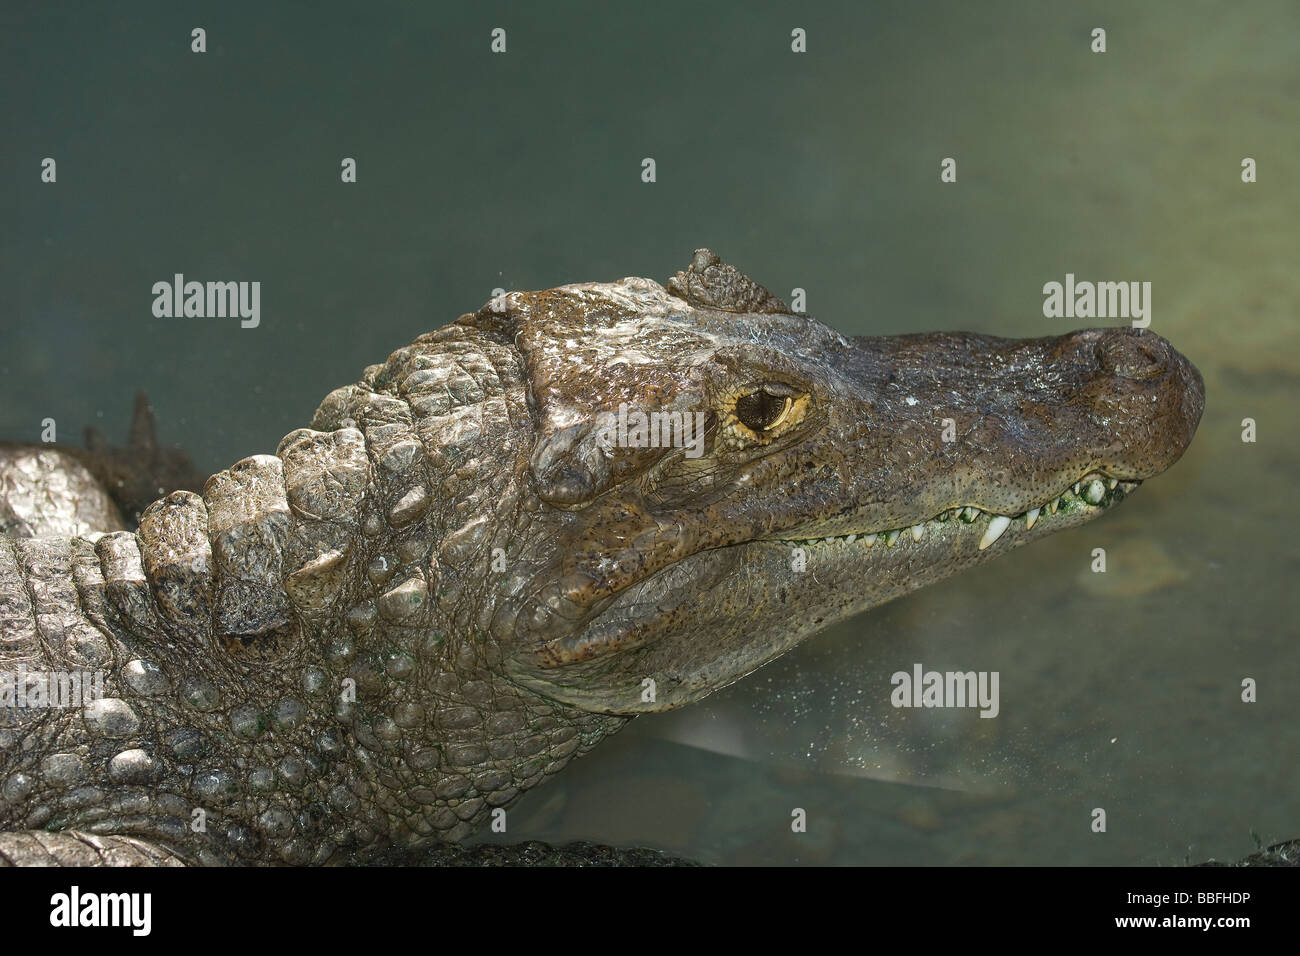 Brillentragende Brillenkaiman, Caiman Crocodilus gefunden in Mittel- und Südamerika Stockfoto